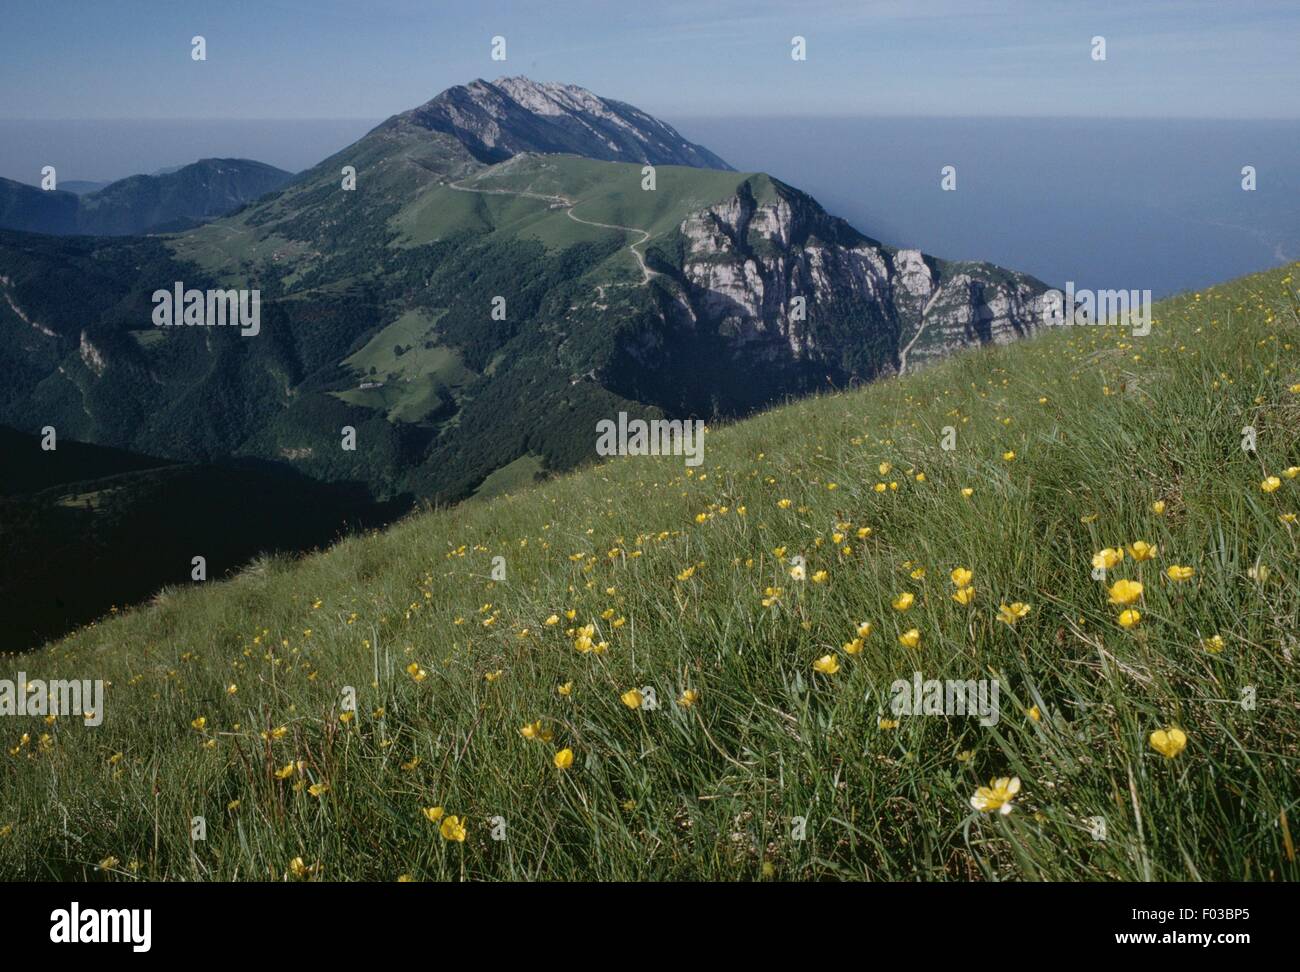 Colma di Malcesine from Monte Altissimo di Nago, Trentino-Alto Adige, Italy. Stock Photo